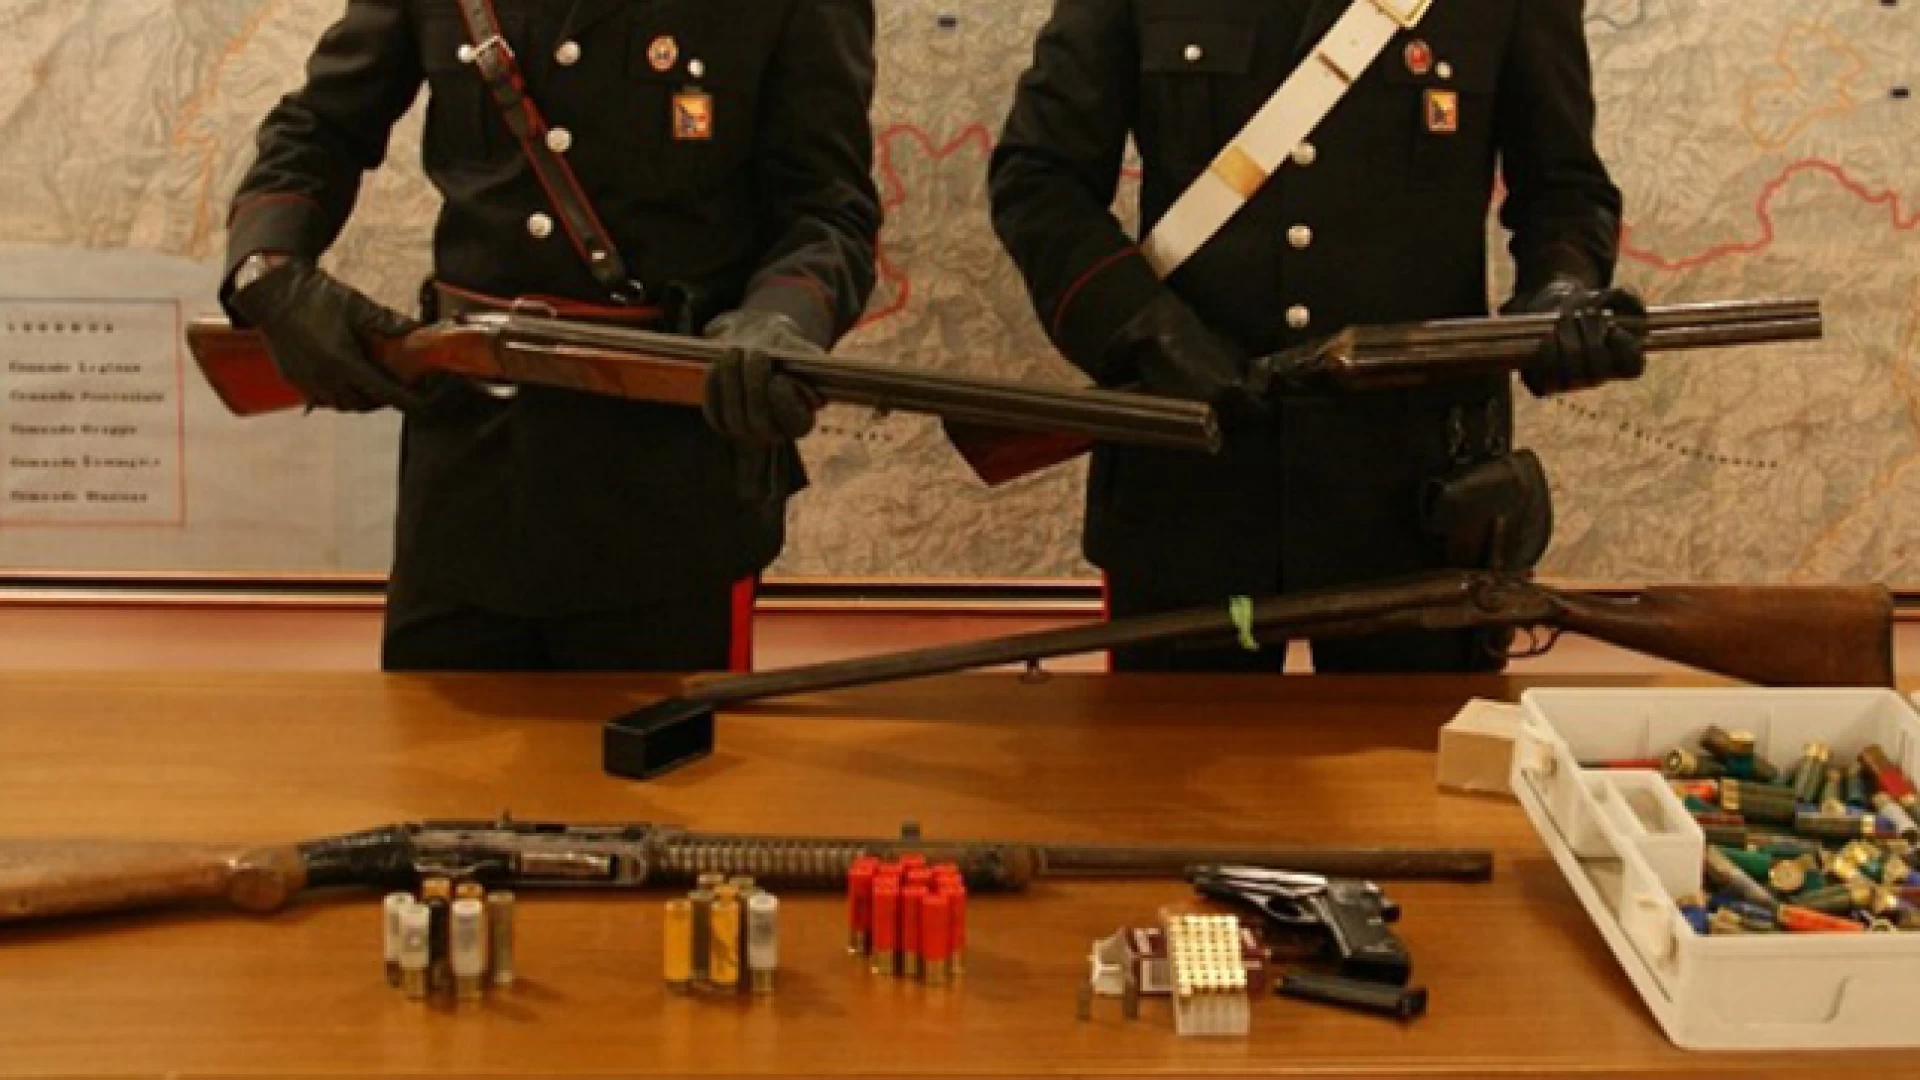 Isernia: Controlli dei Carabinieri sul rispetto delle norme in materia di porto e detenzione di armi. Tre persone denunciate e sottoposti a sequestro quattro fucili, due pistole e oltre cento munizioni.